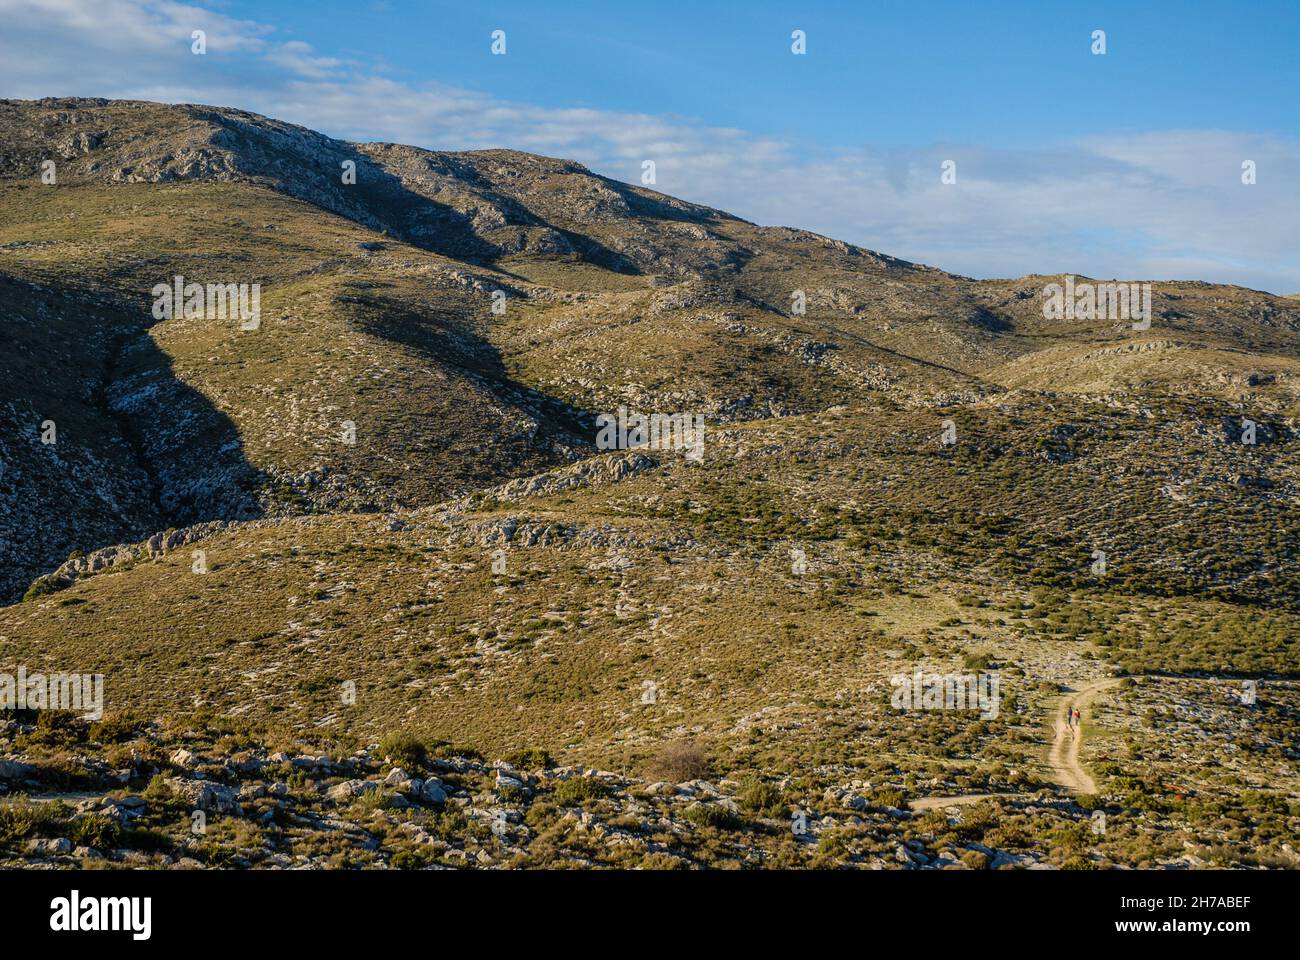 Paysage avec de minuscules gens qui font de la randonnée sur une piste lointaine au-dessus d'un terrain de montagne accidenté, Benimaurell, province d'Alicante, Espagne Banque D'Images